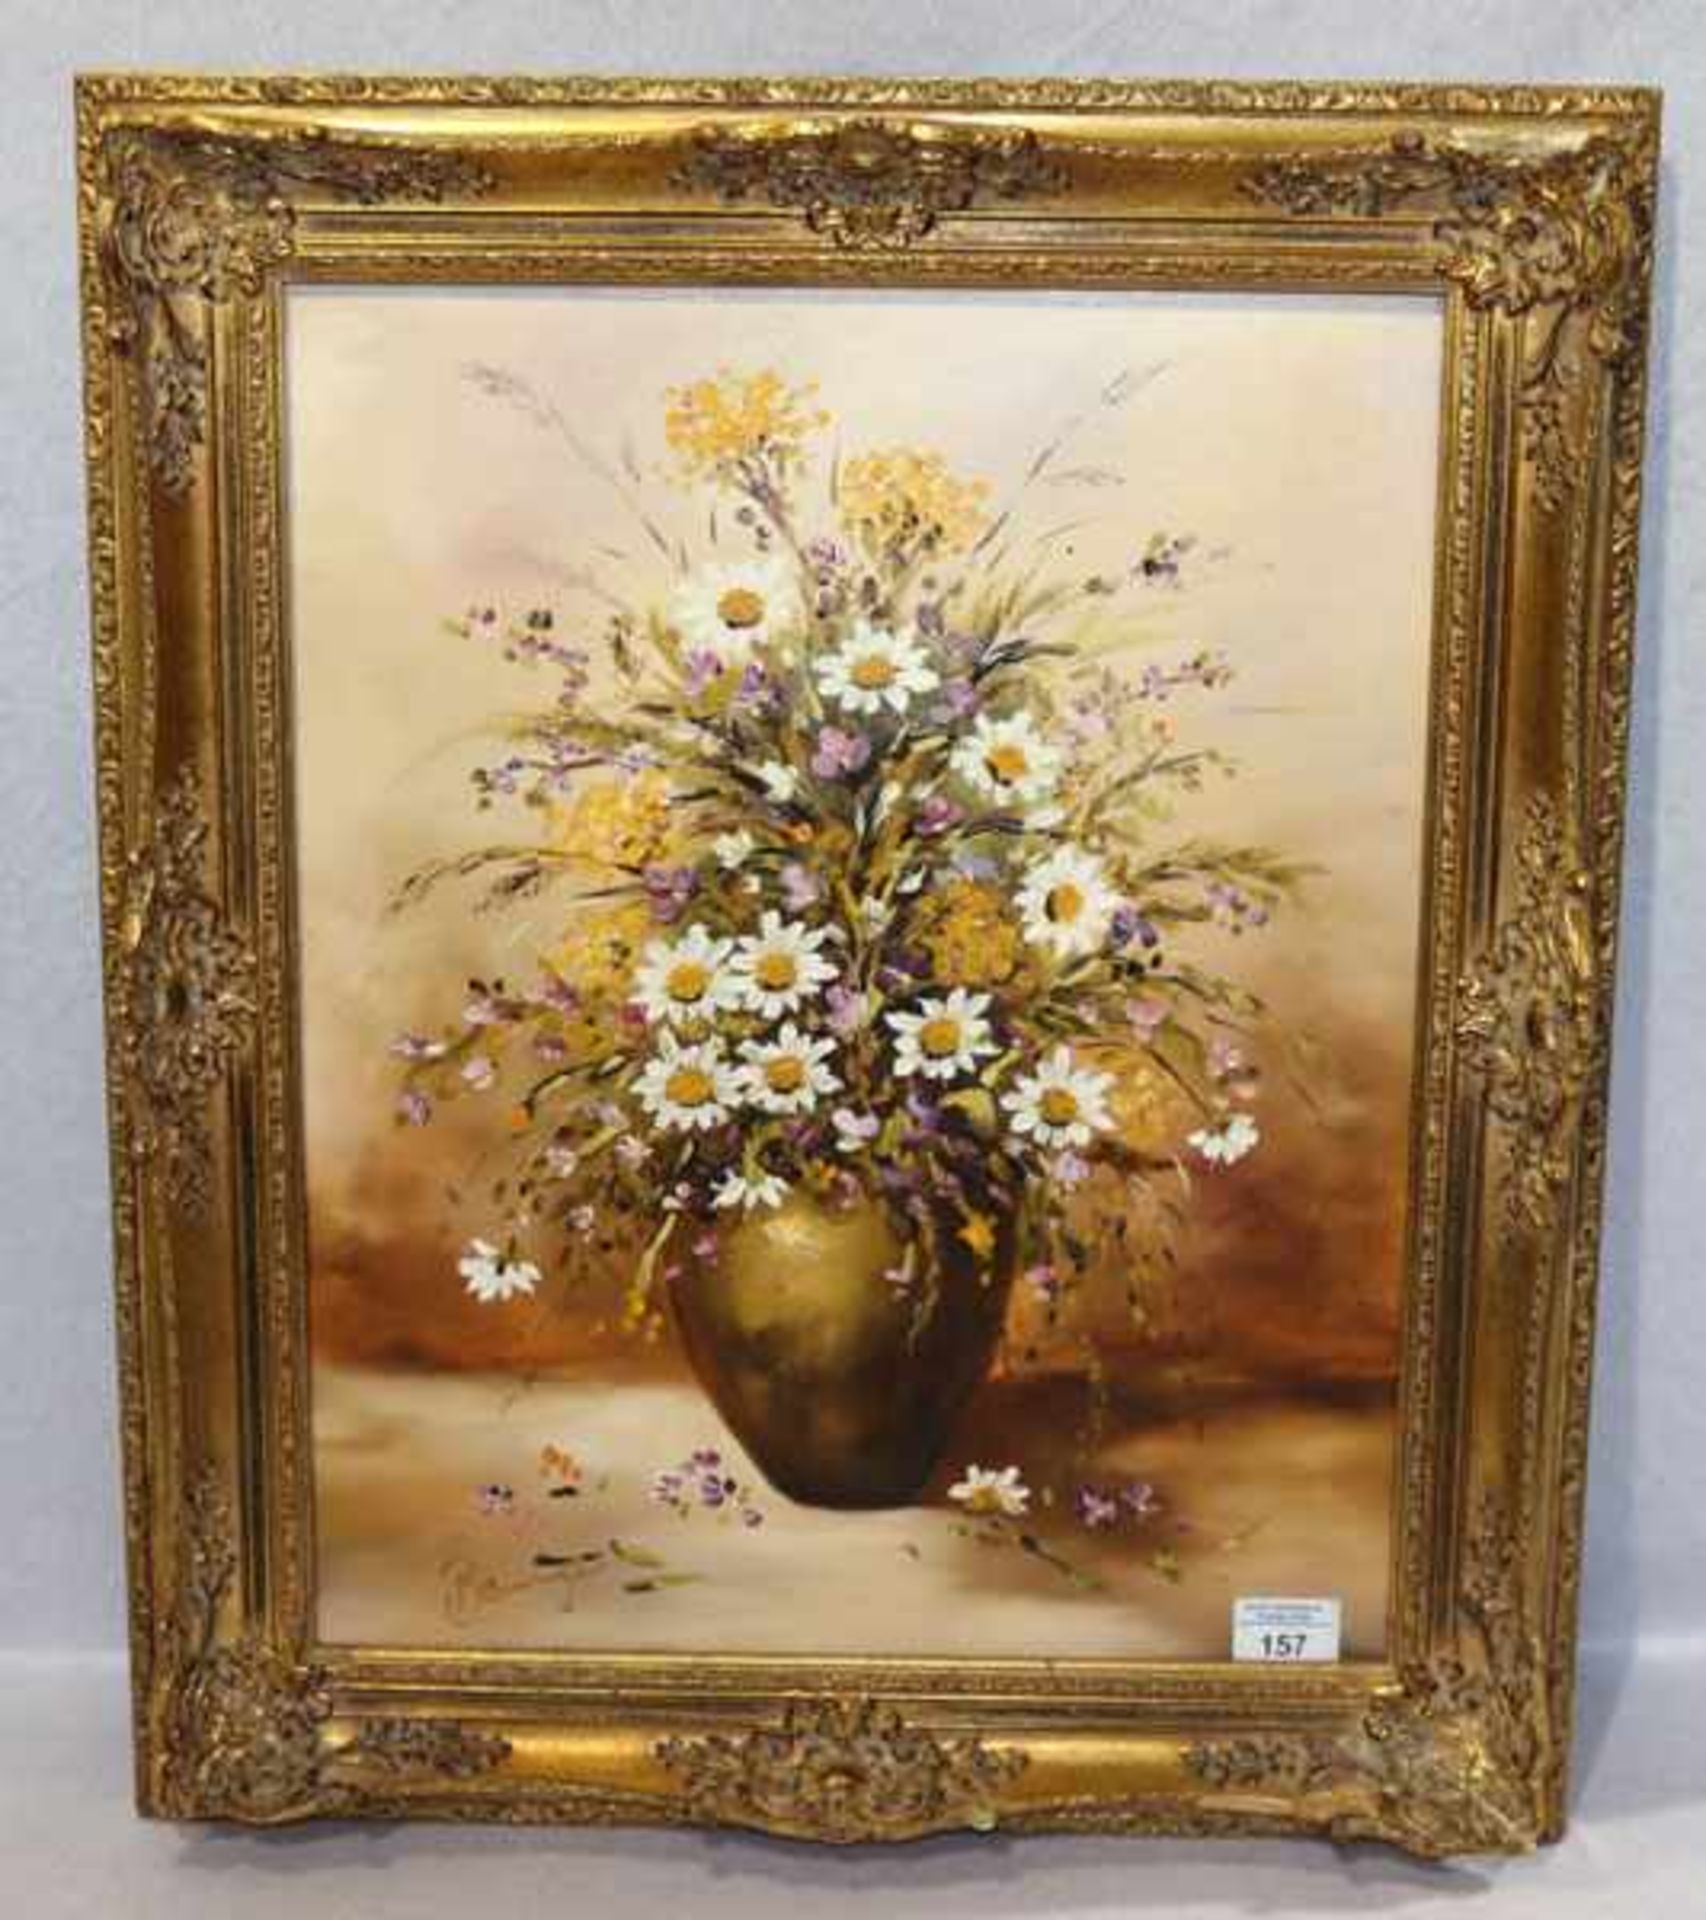 Gemälde ÖL/LW 'Blumenstrauß in Vase', unleserlich signiert, gerahmt, Rahmen beschädigt und